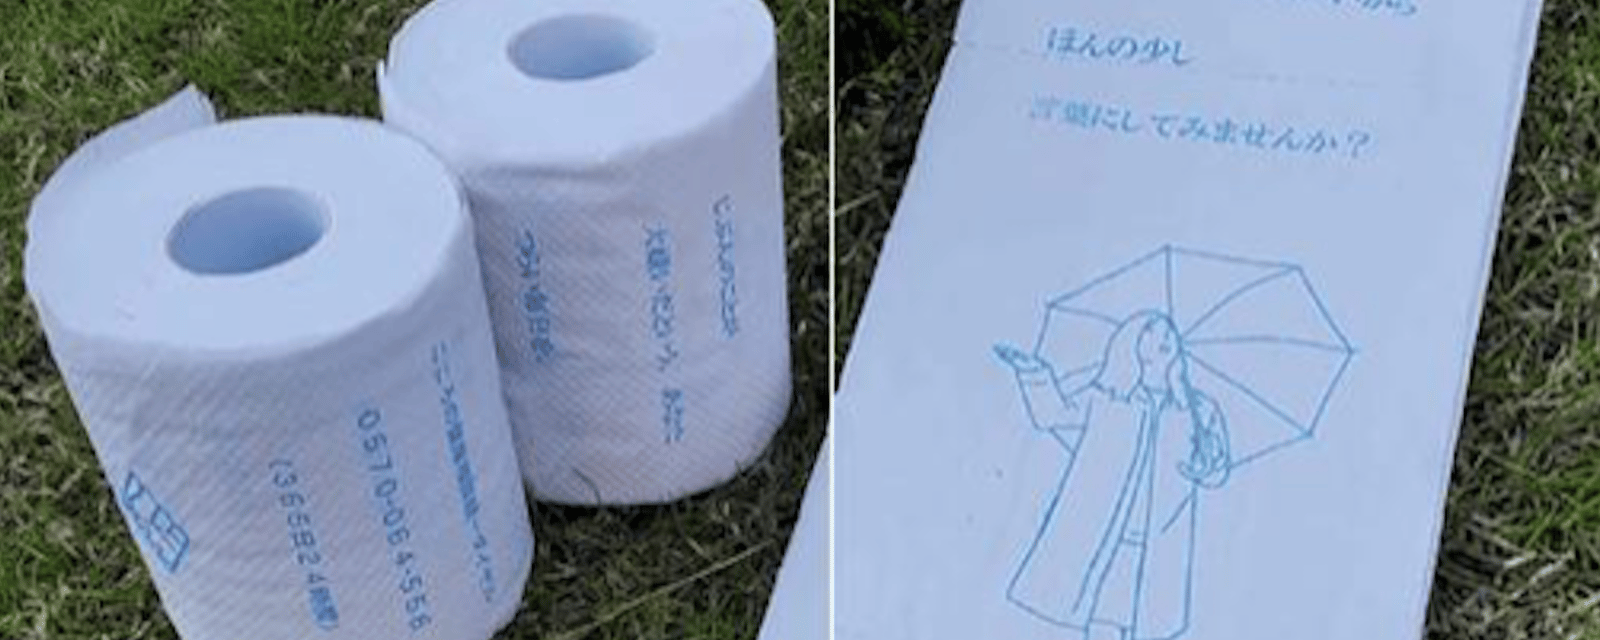 Du papier de toilette pour prévenir le suicide chez les jeunes